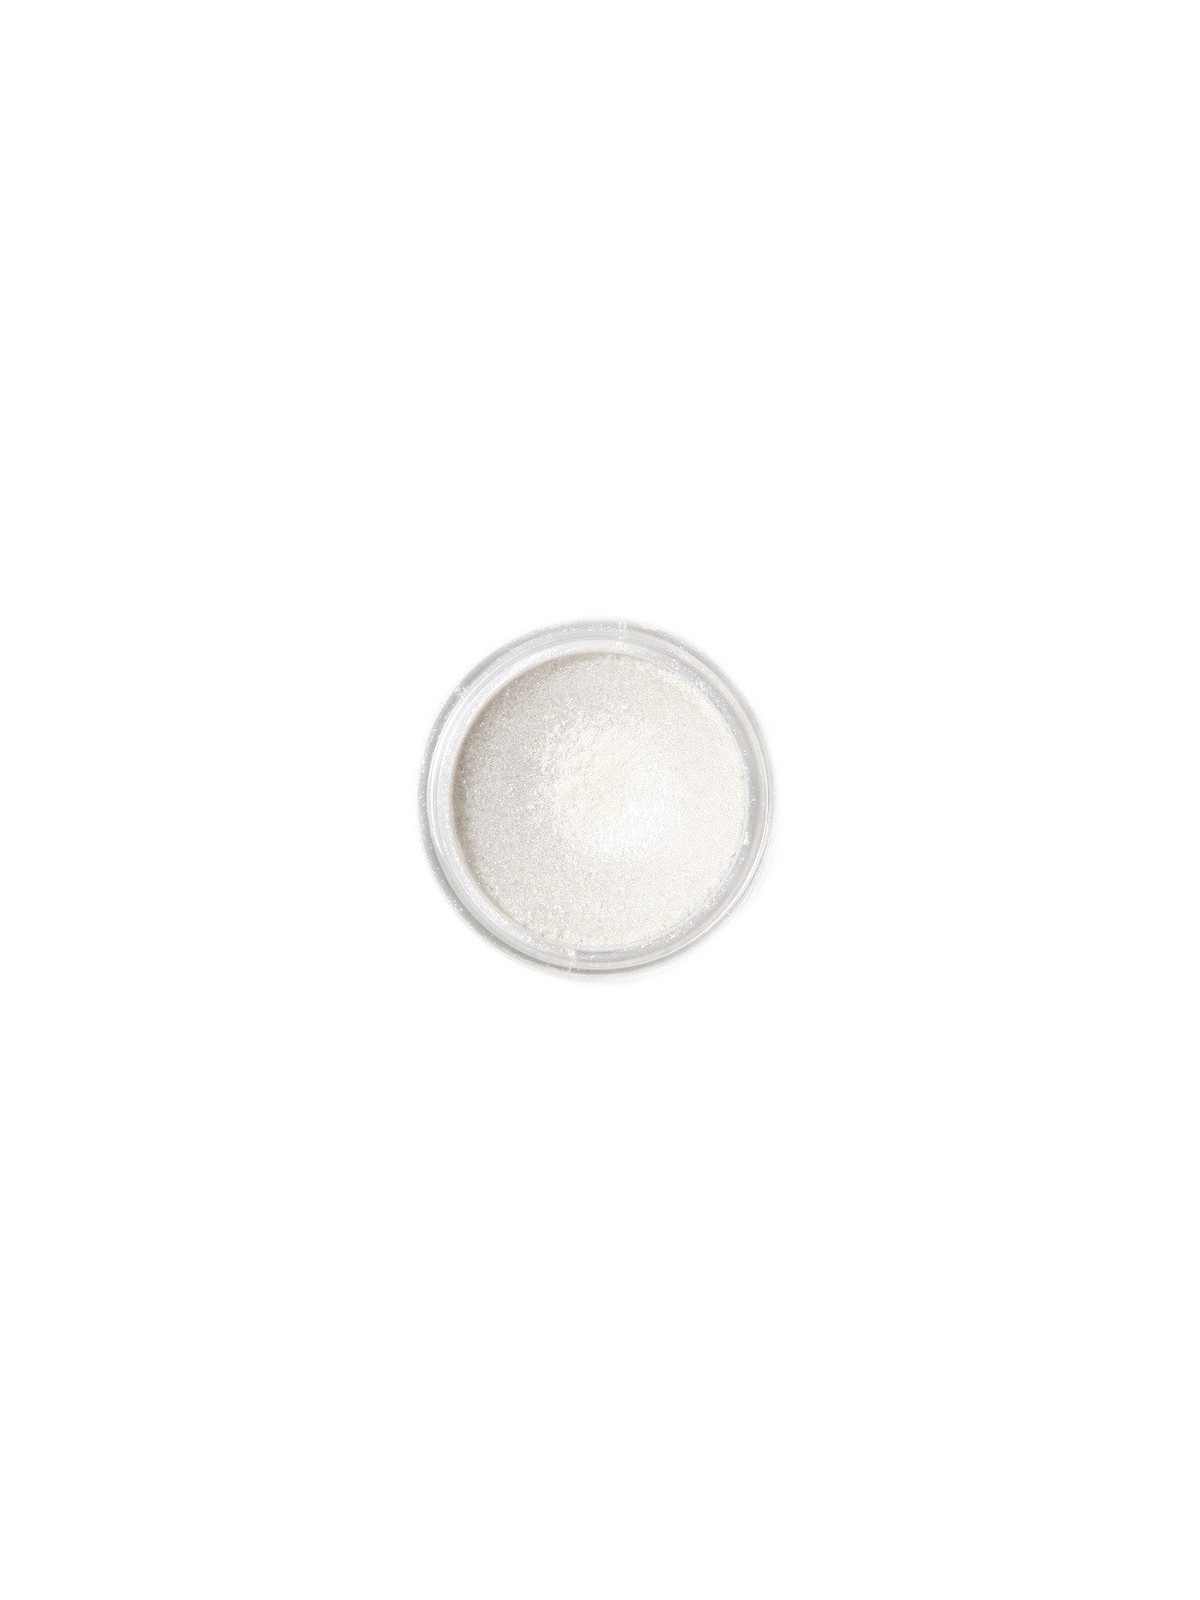 Dekoracyjny proszek w kolorze perłowym Fractal - Sparkling White